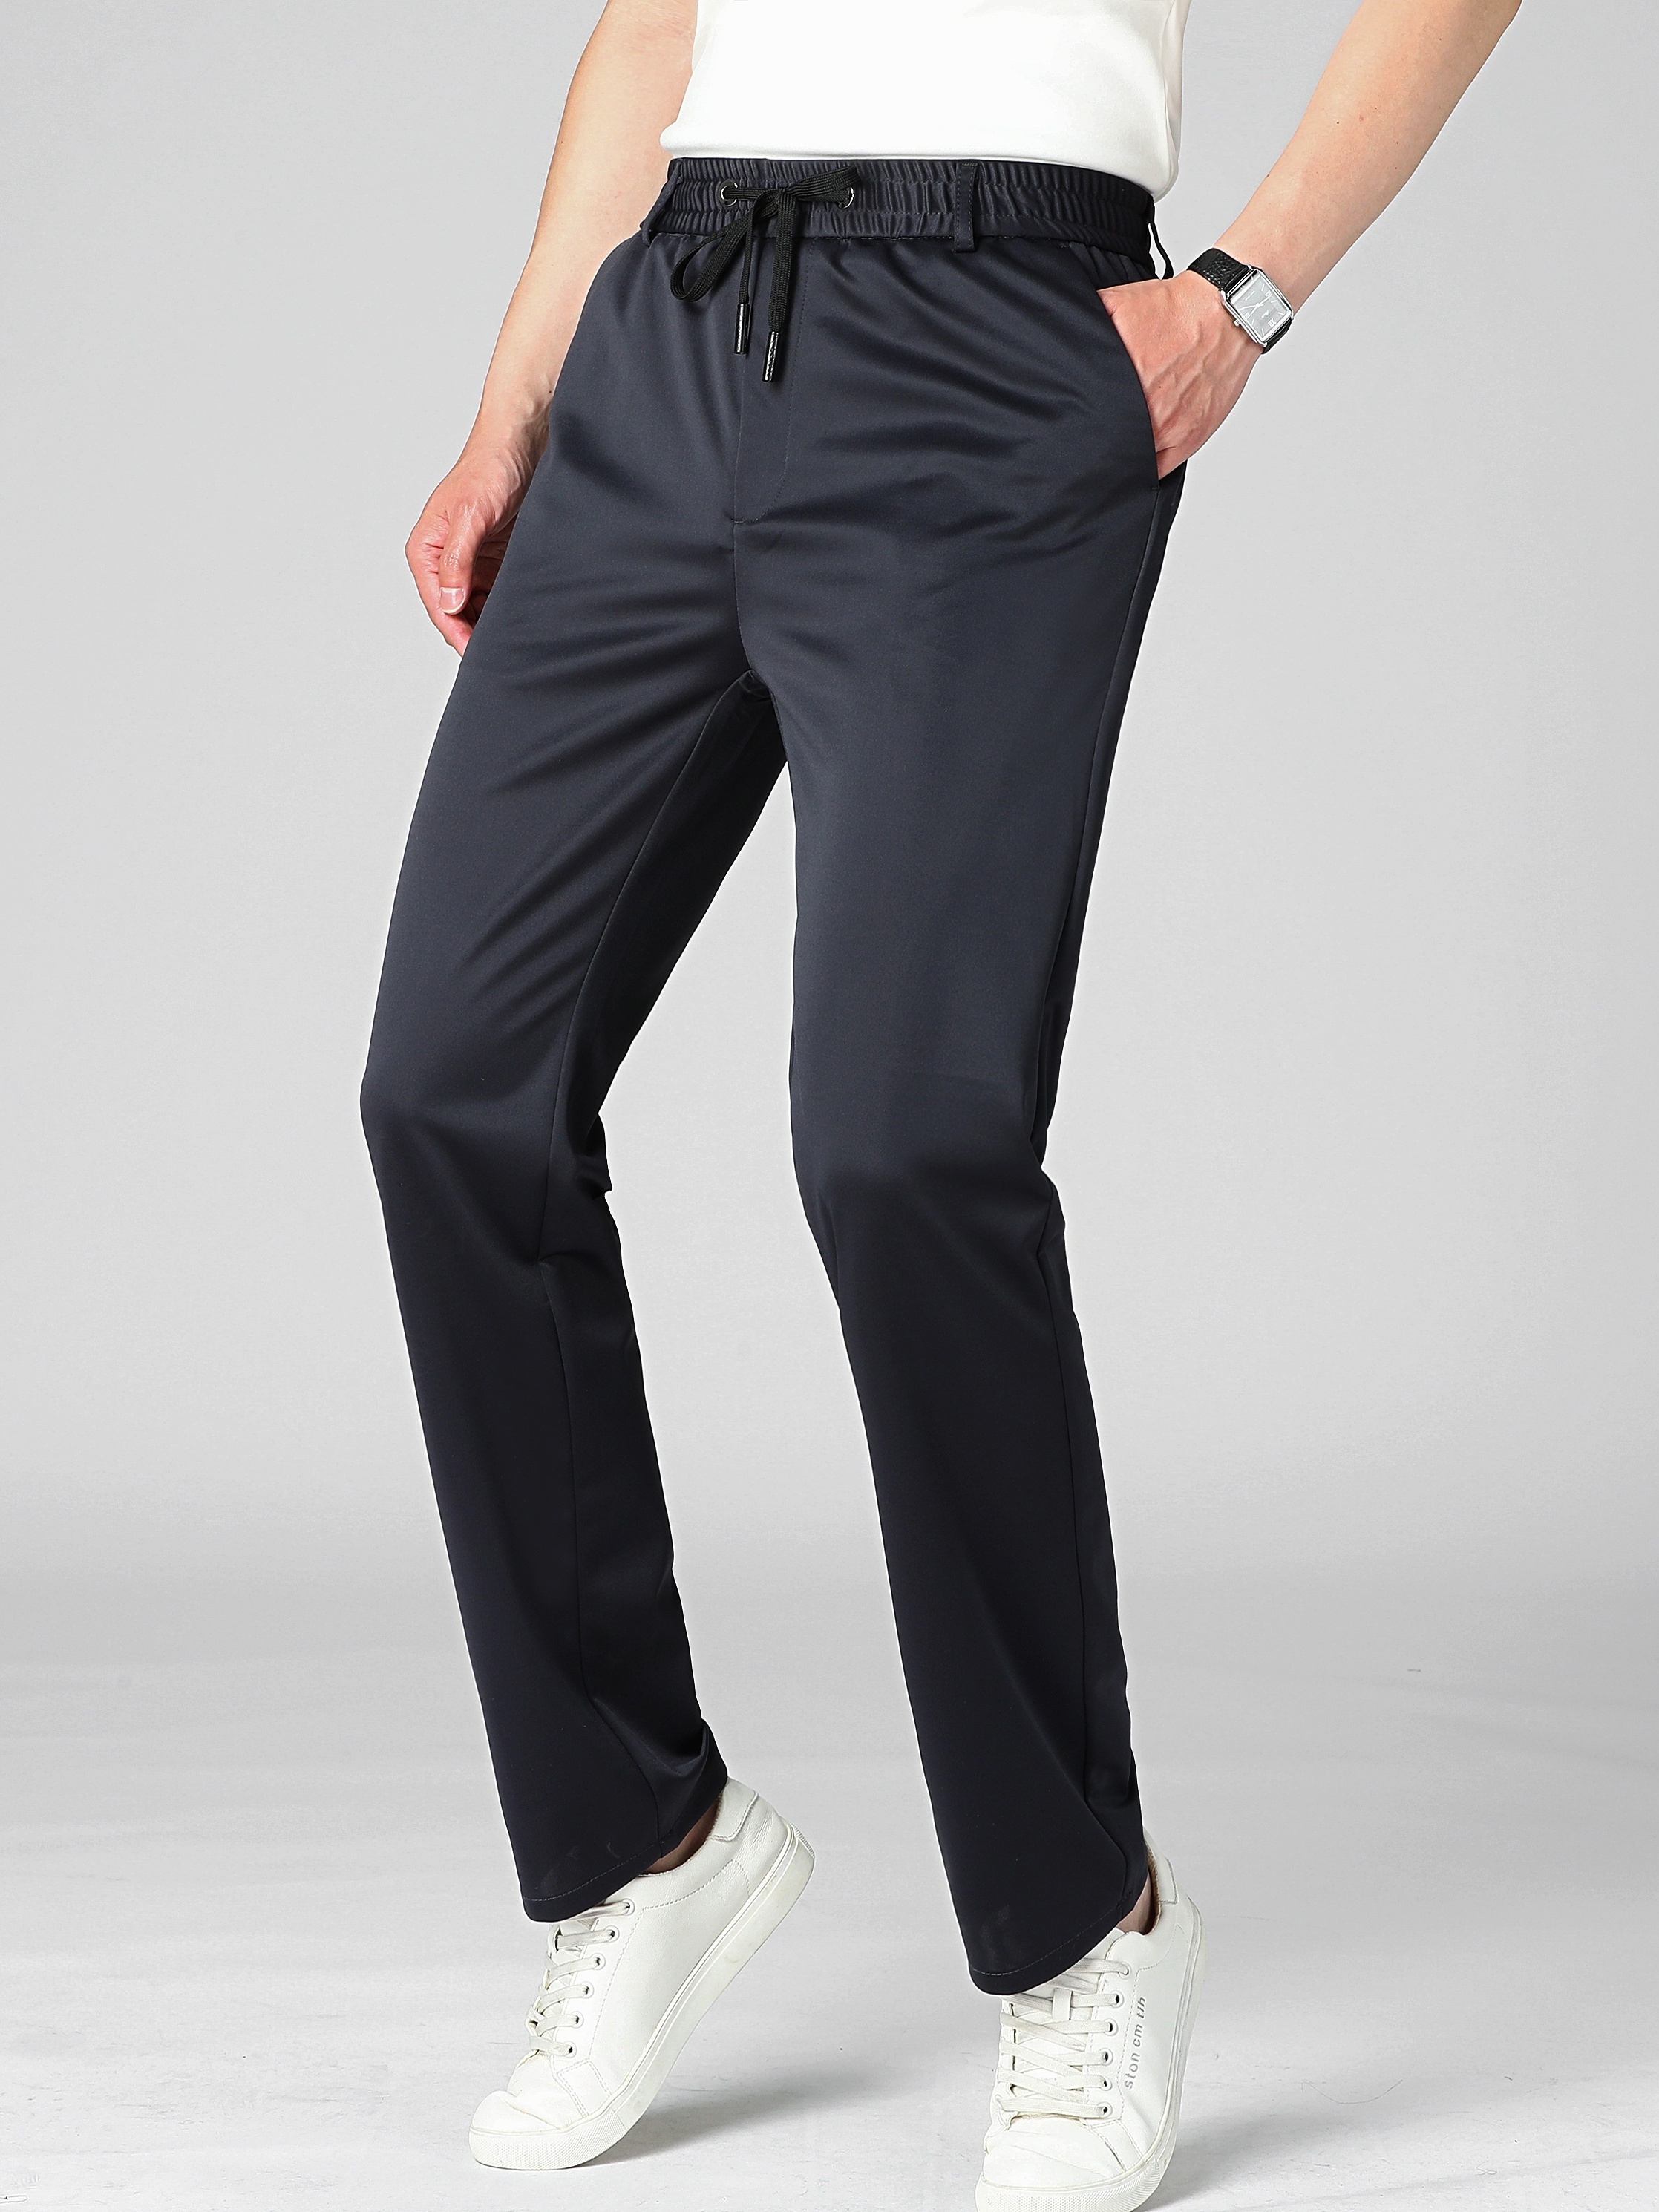 Classic Design Dress Pants Men's Formal Solid Color Slightly